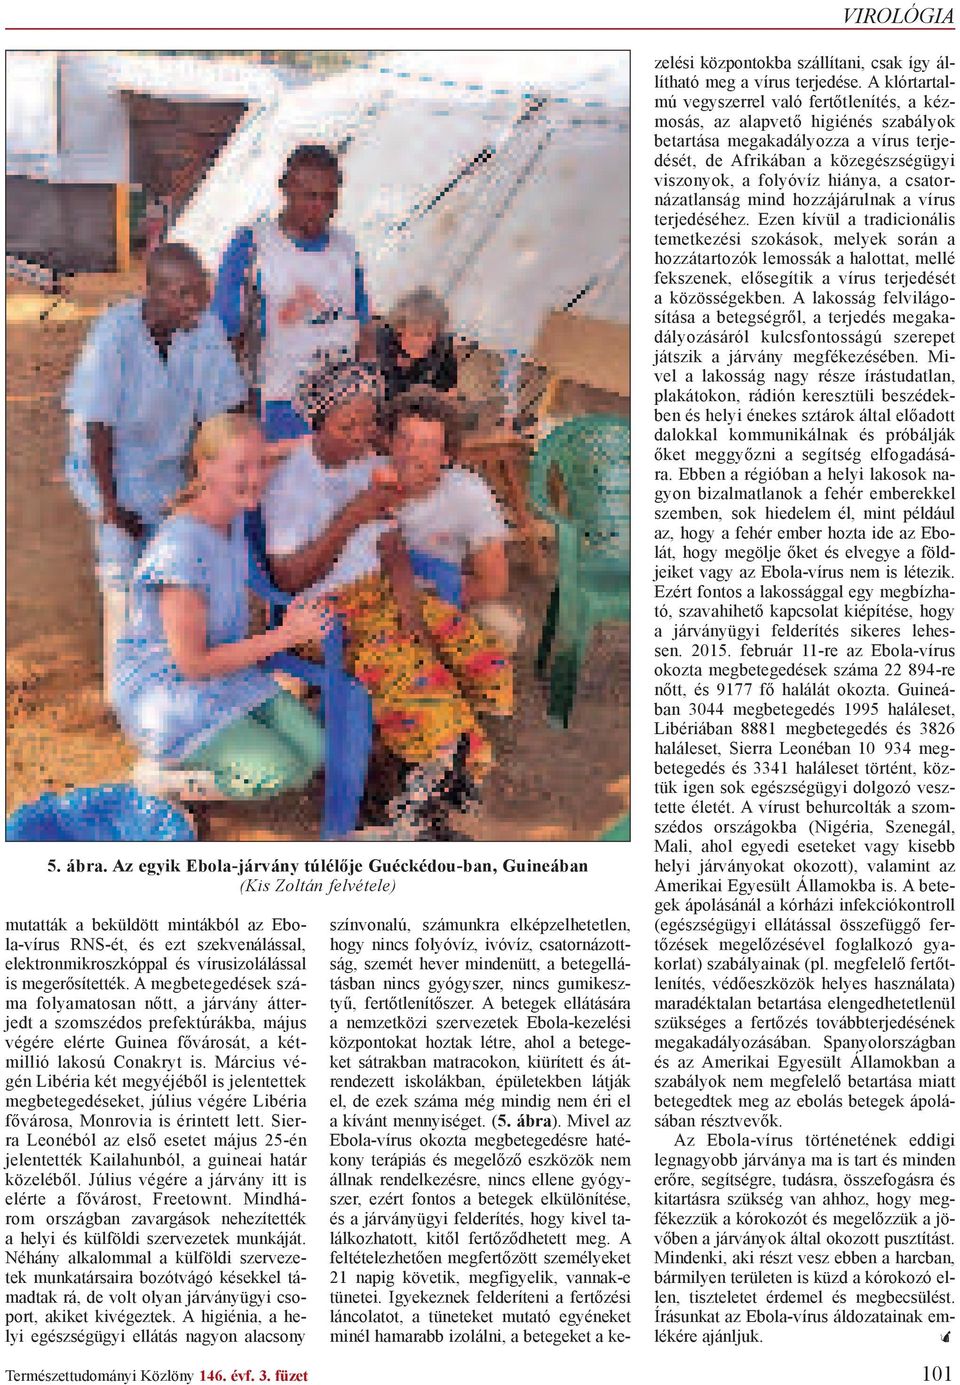 is meger sítették. A megbetegedések száma folyamatosan n tt, a járvány átterjedt a szomszédos prefektúrákba, május végére elérte Guinea f városát, a kétmillió lakosú Conakryt is.